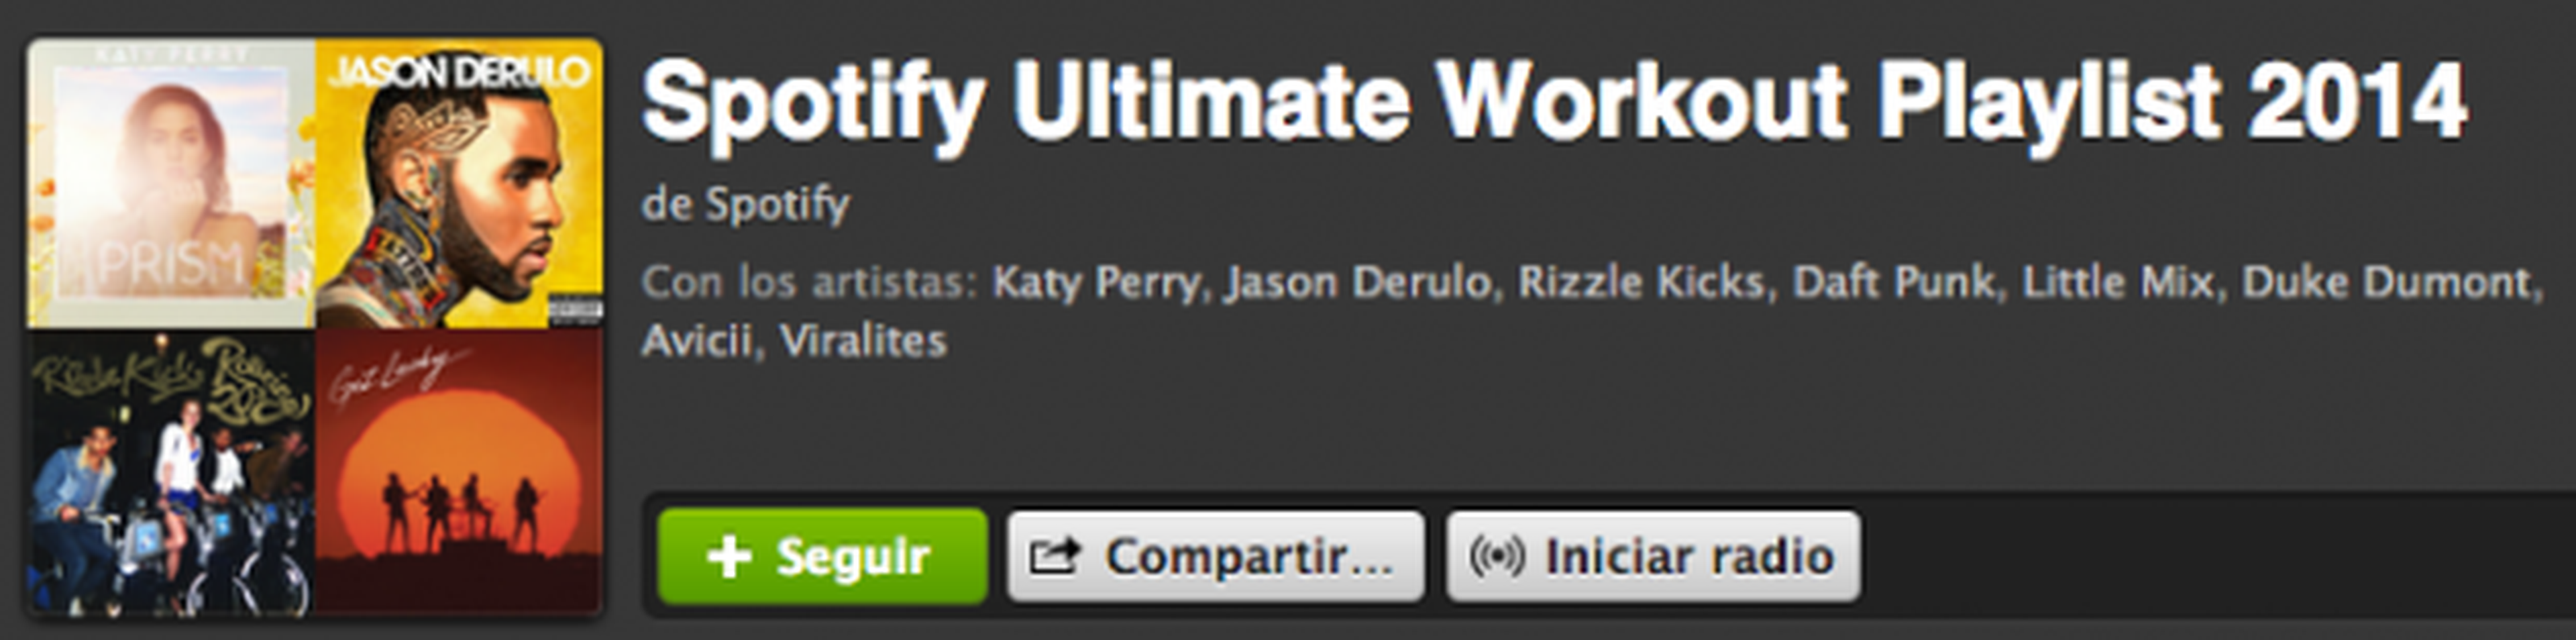 Spotify Ultimate Workout Playlist 2014